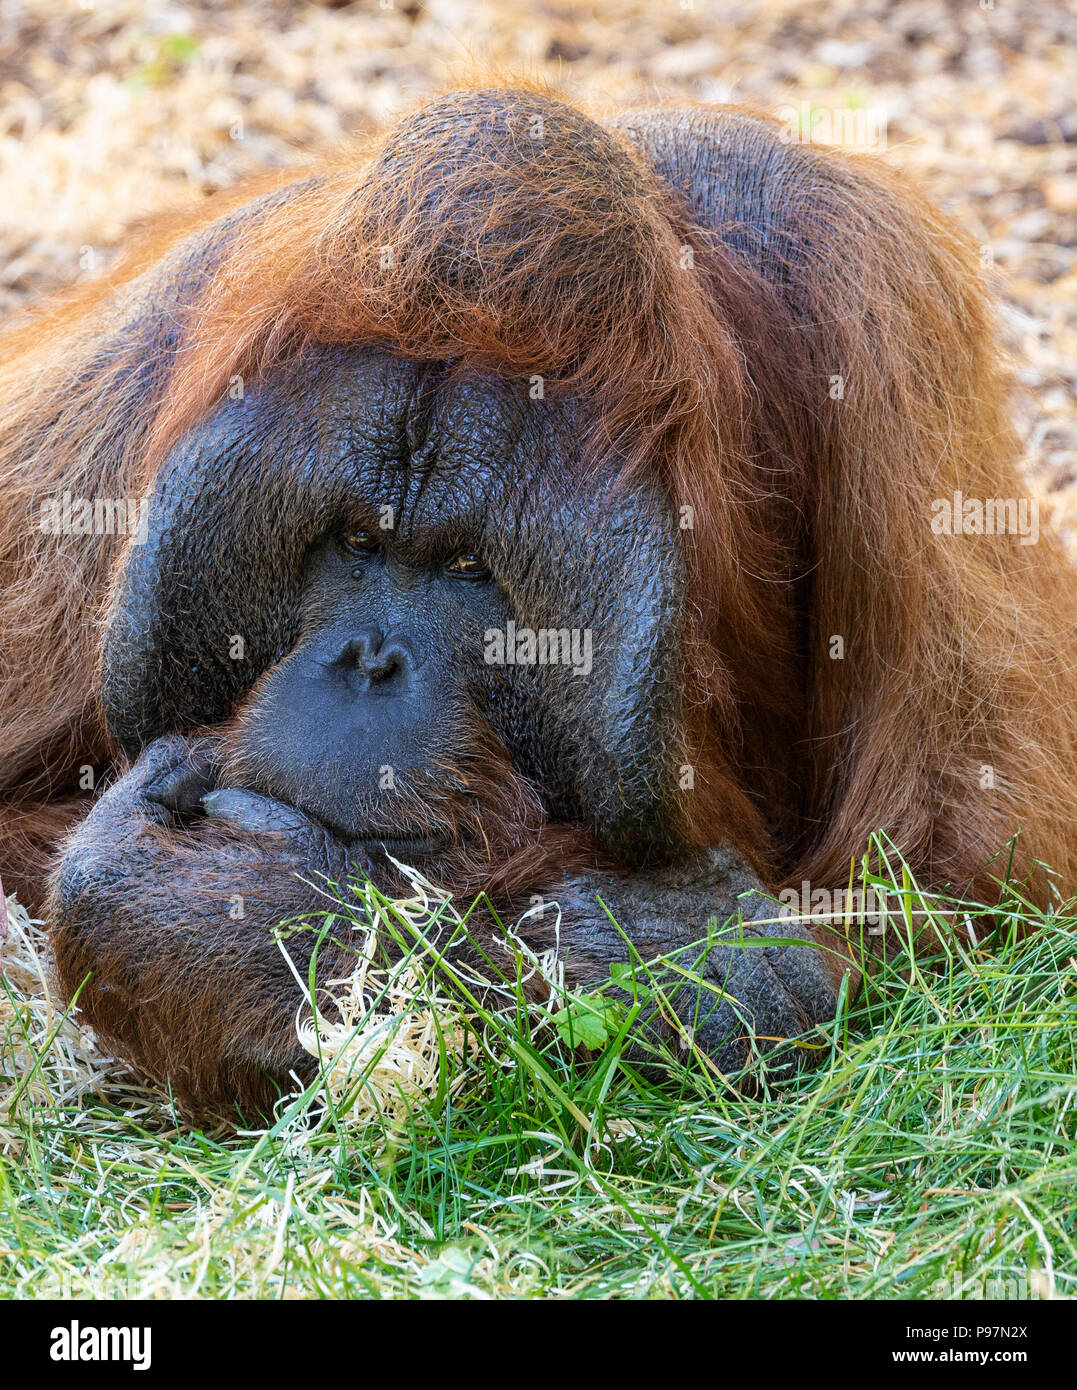 Male Bornean Orangutan, Pongo pygmaeus pygmaeus. Zoo animal. Stock Photo